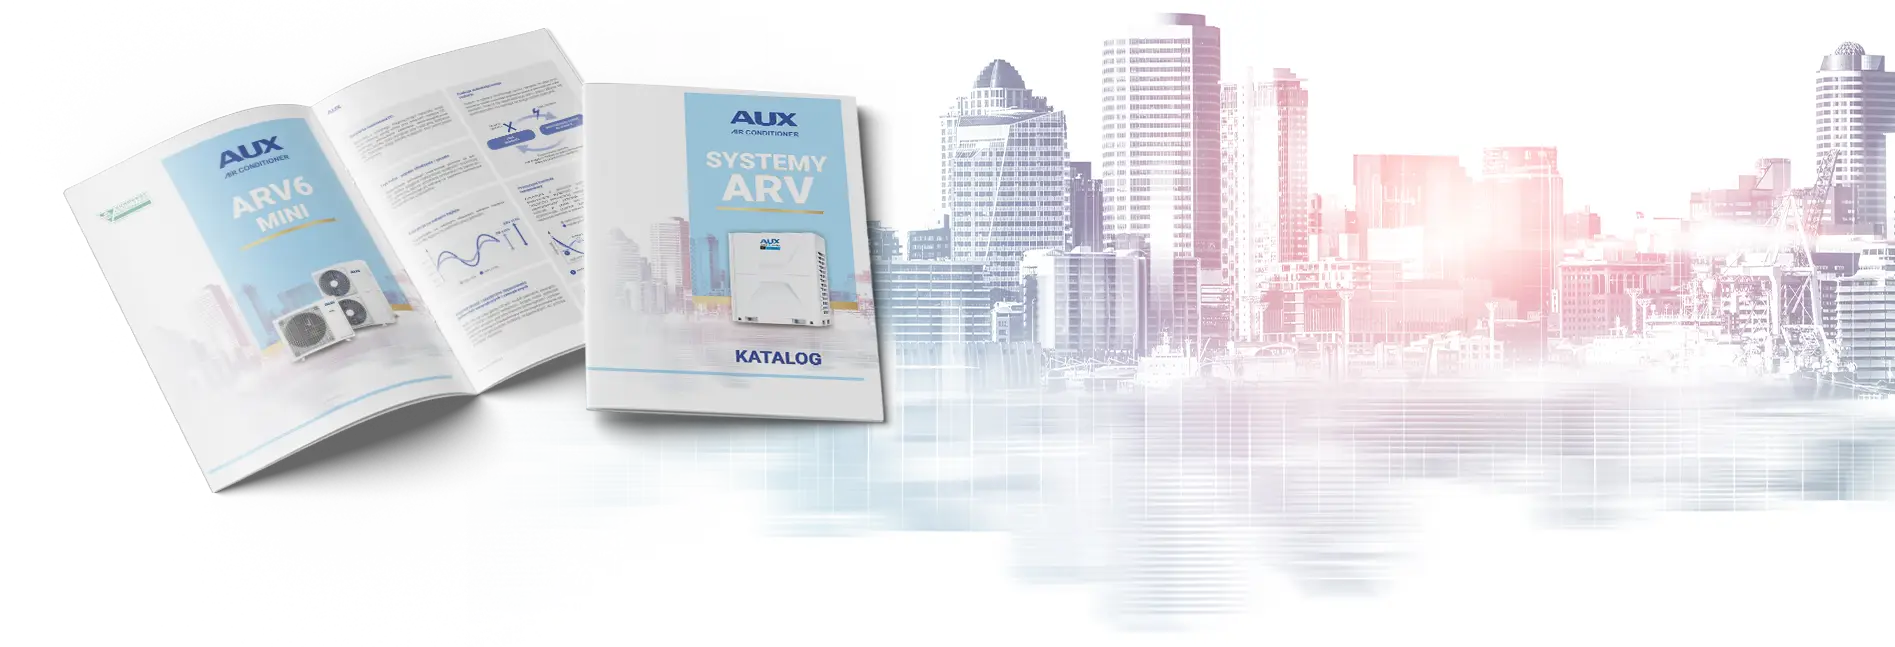 AUX-Klimaanlagen ARV-Systeme